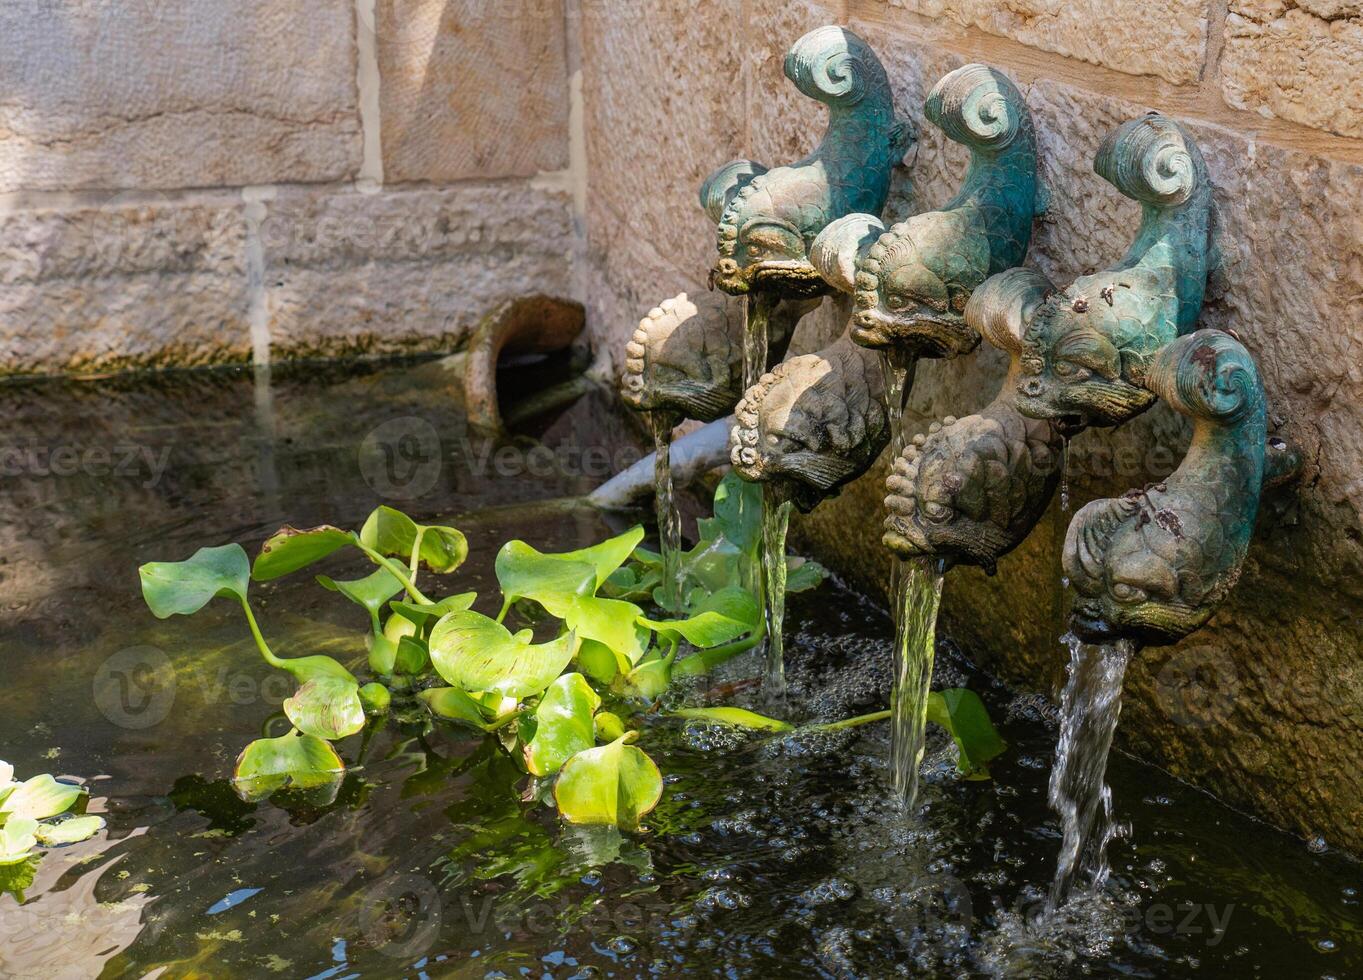 de kerk van de vermenigvuldiging van de broden en de vissen, tabha, Israël. fontein met bronzen vissen. hoog kwaliteit foto